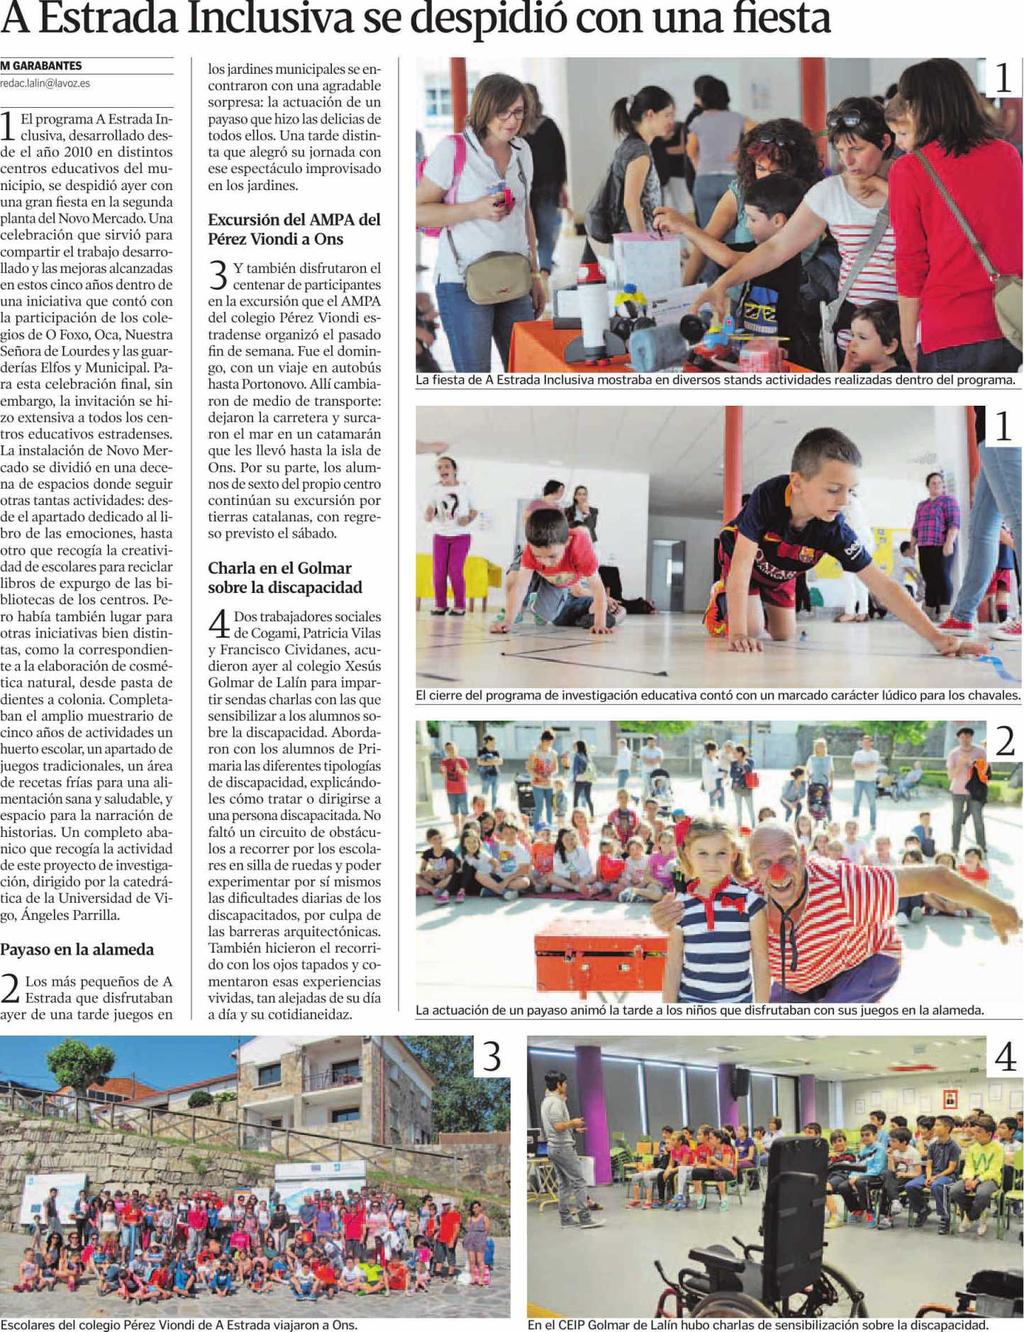 La Voz de Galícia (Deza y Tabeiros) Pontevedra 11/06/15 Prensa: Diaria Tirada: 12.812 Ejemplares Difusión: 11.